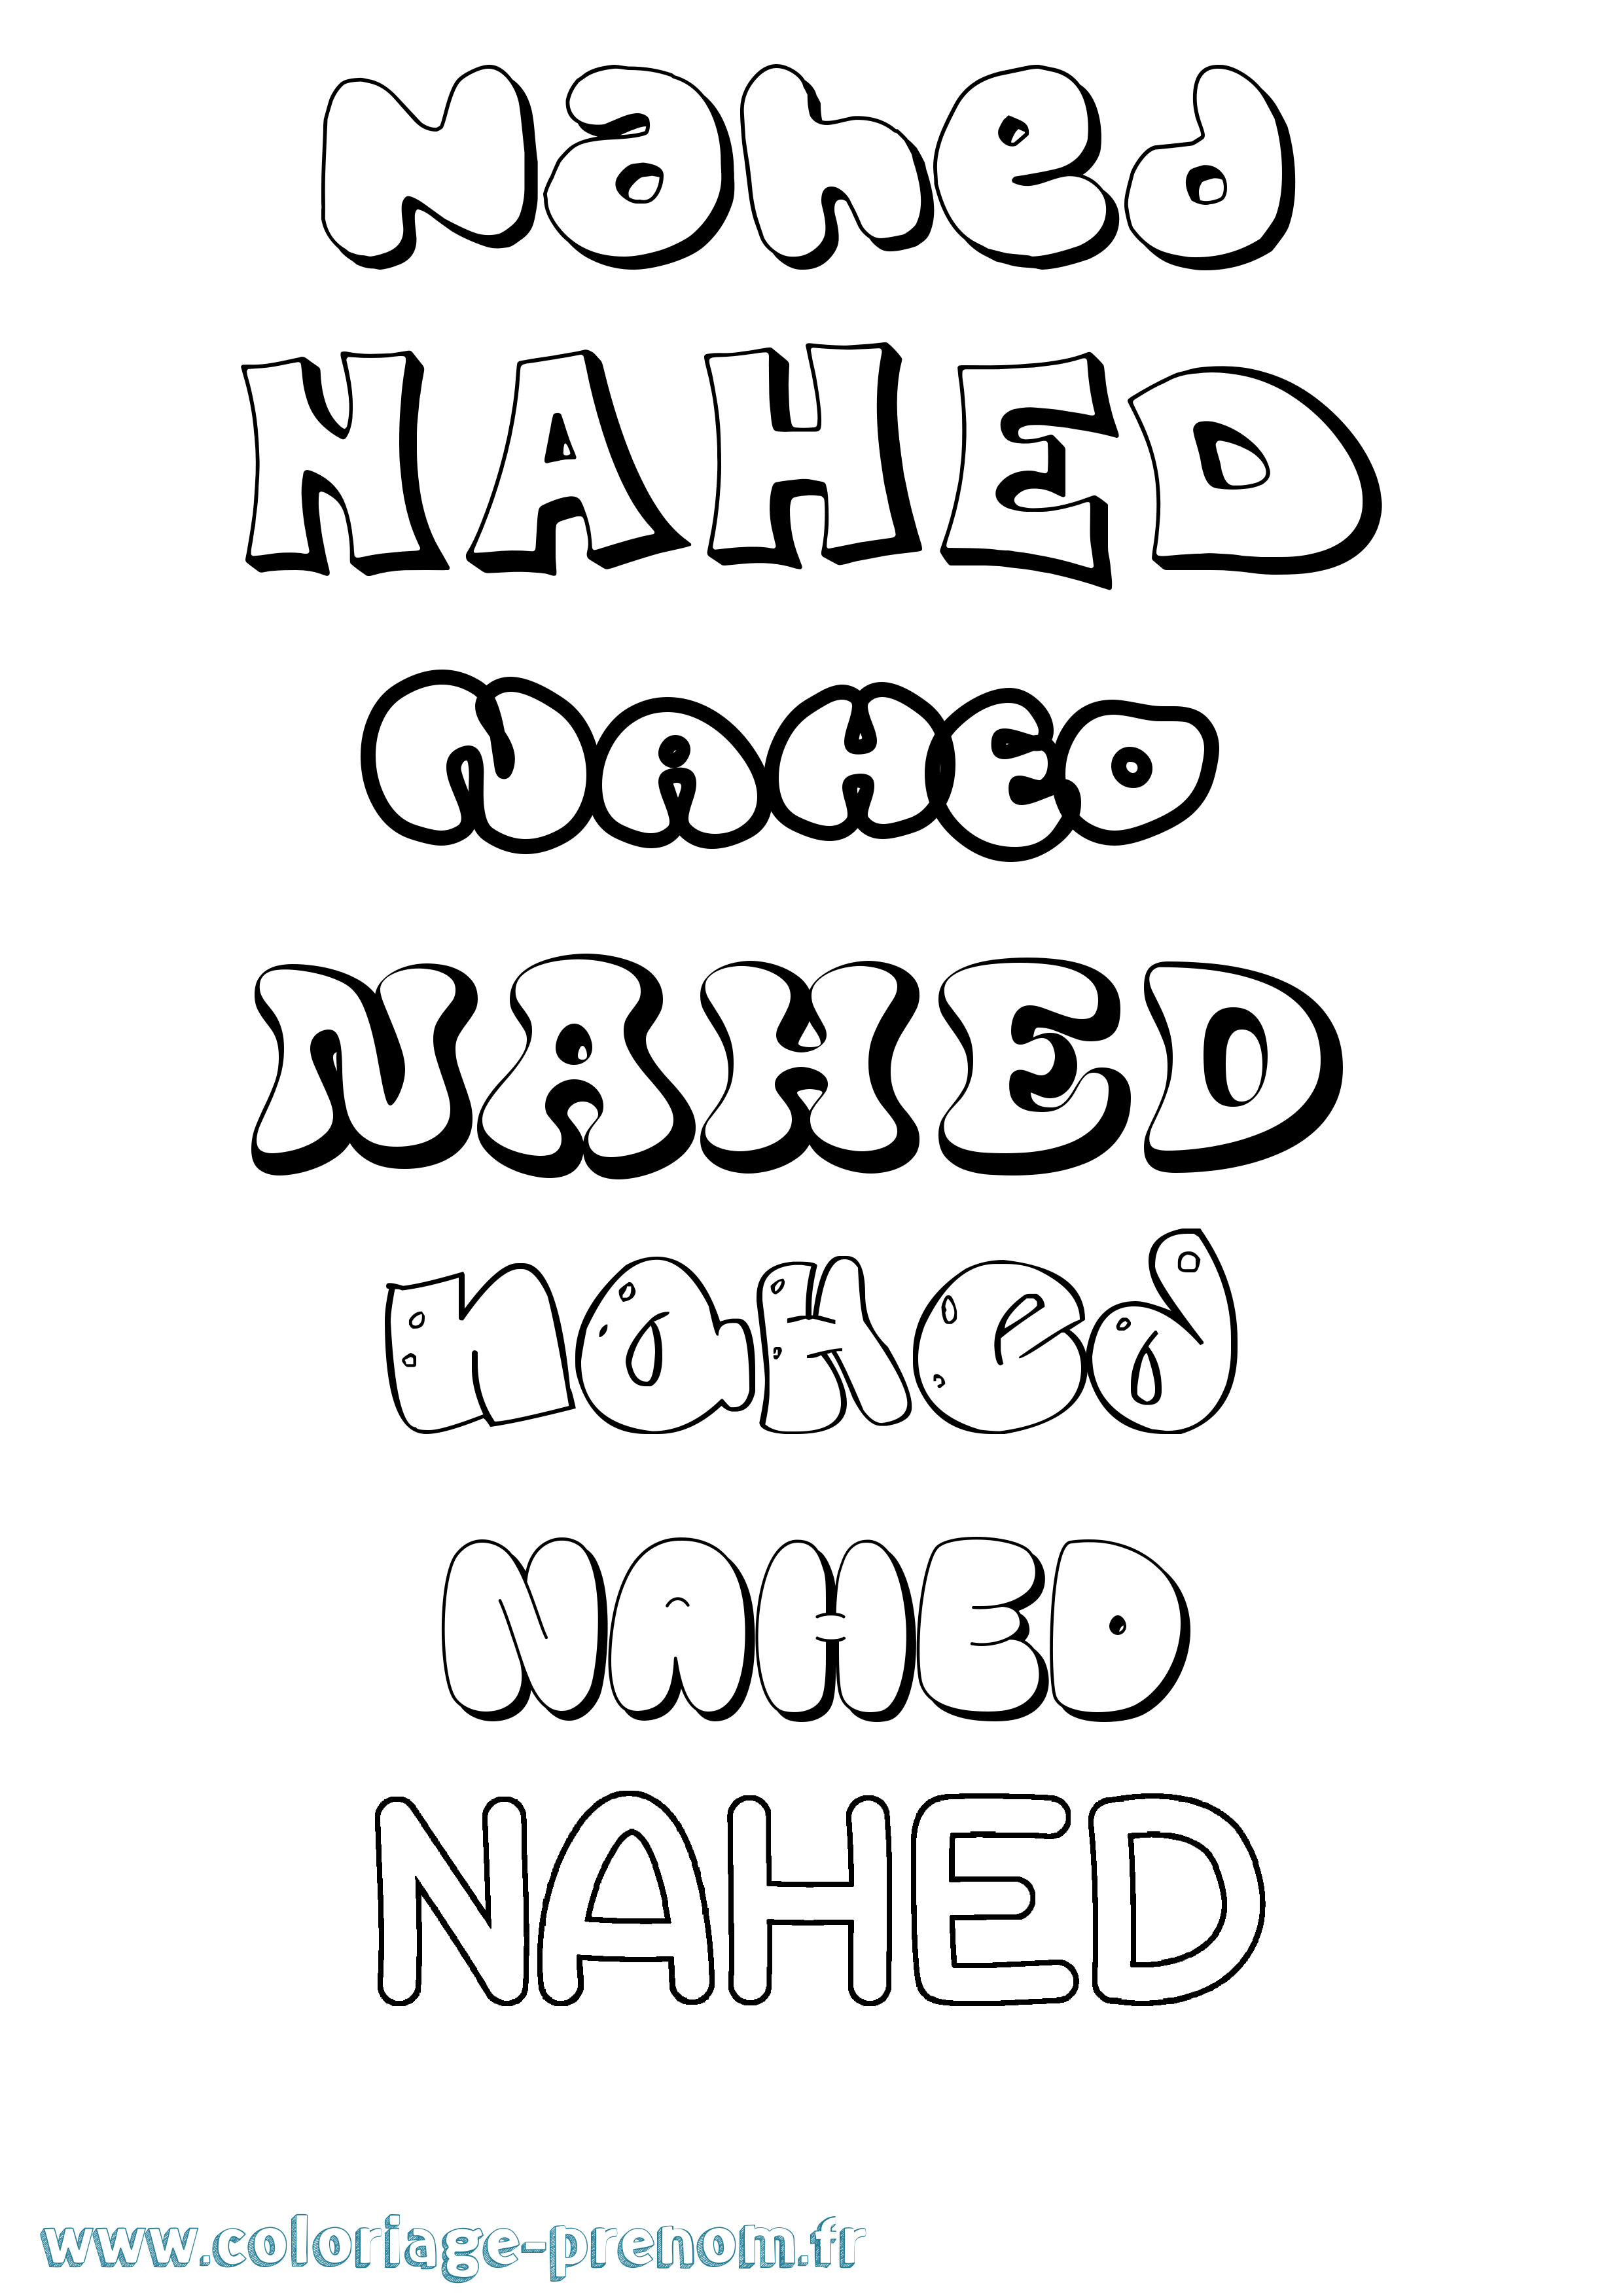 Coloriage prénom Nahed Bubble